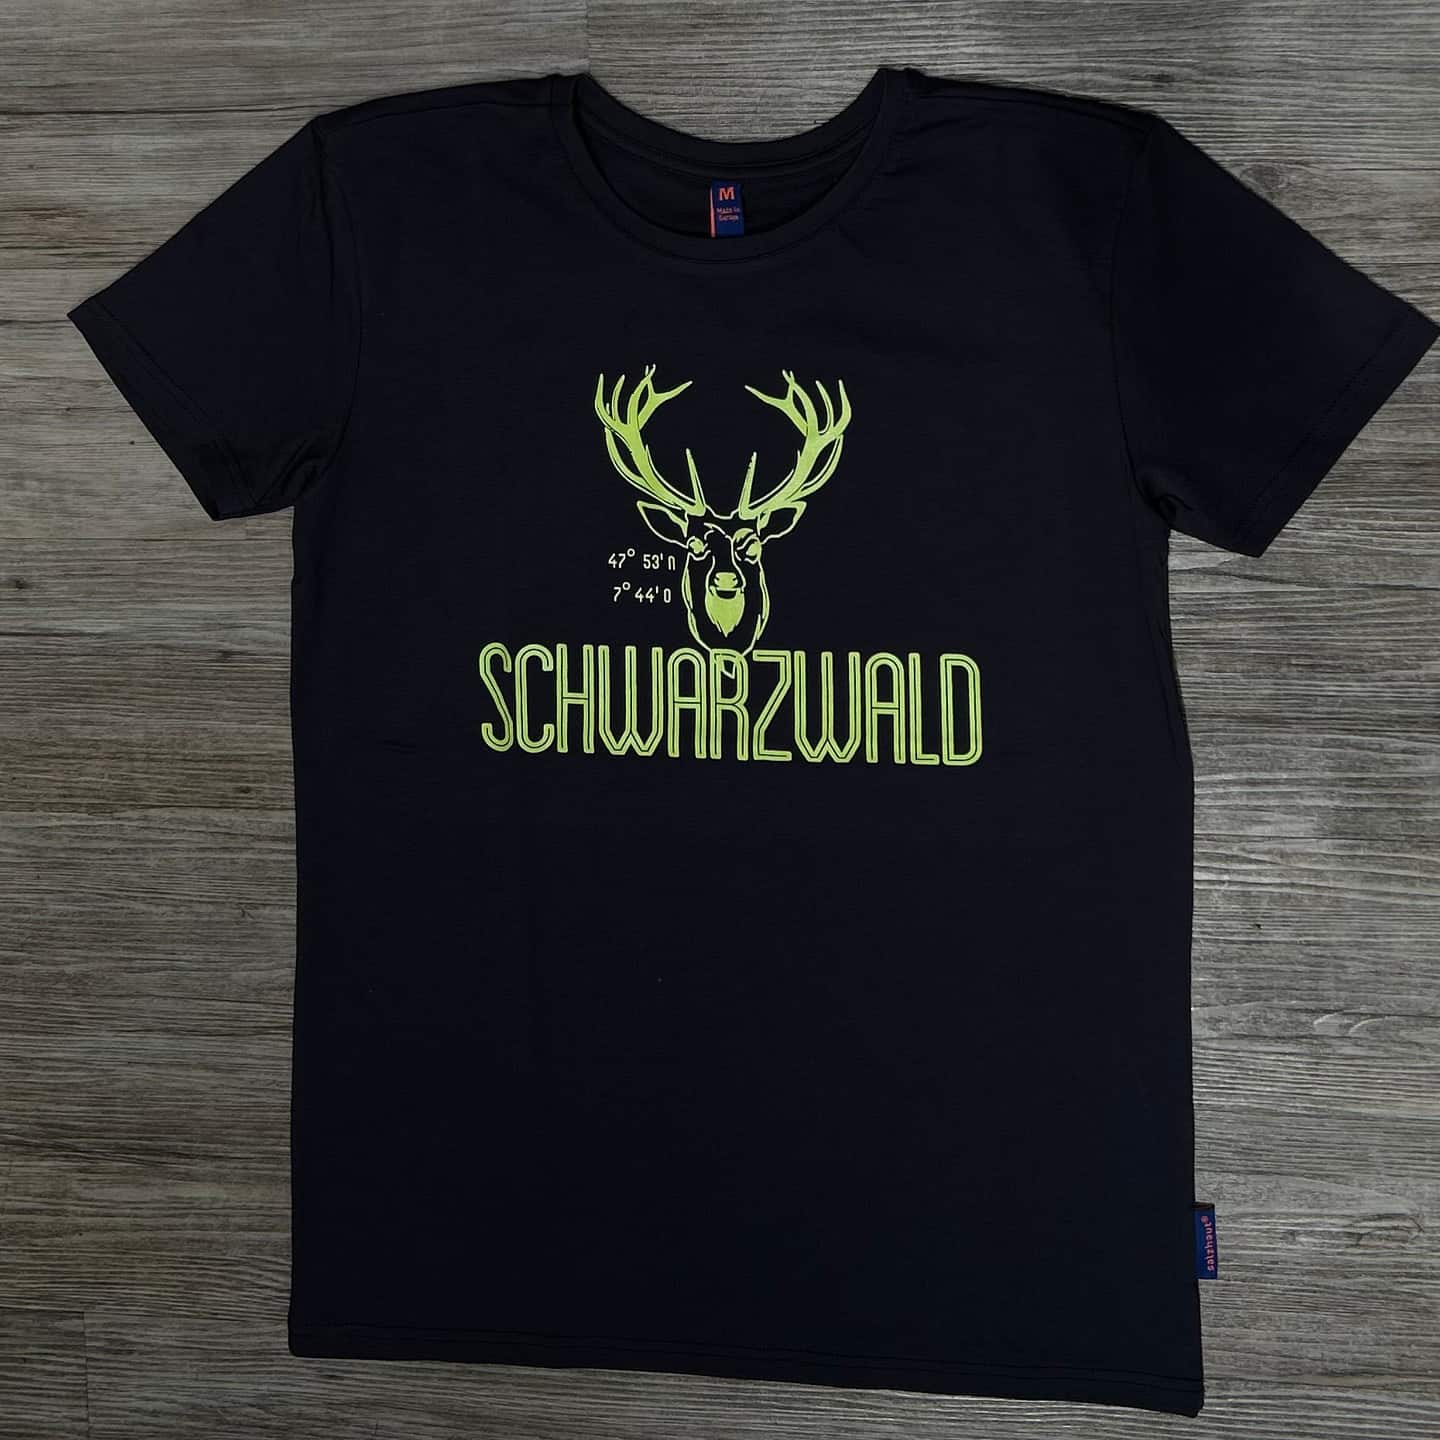 schwarzwald-anthrazit-neongelb-tshirt